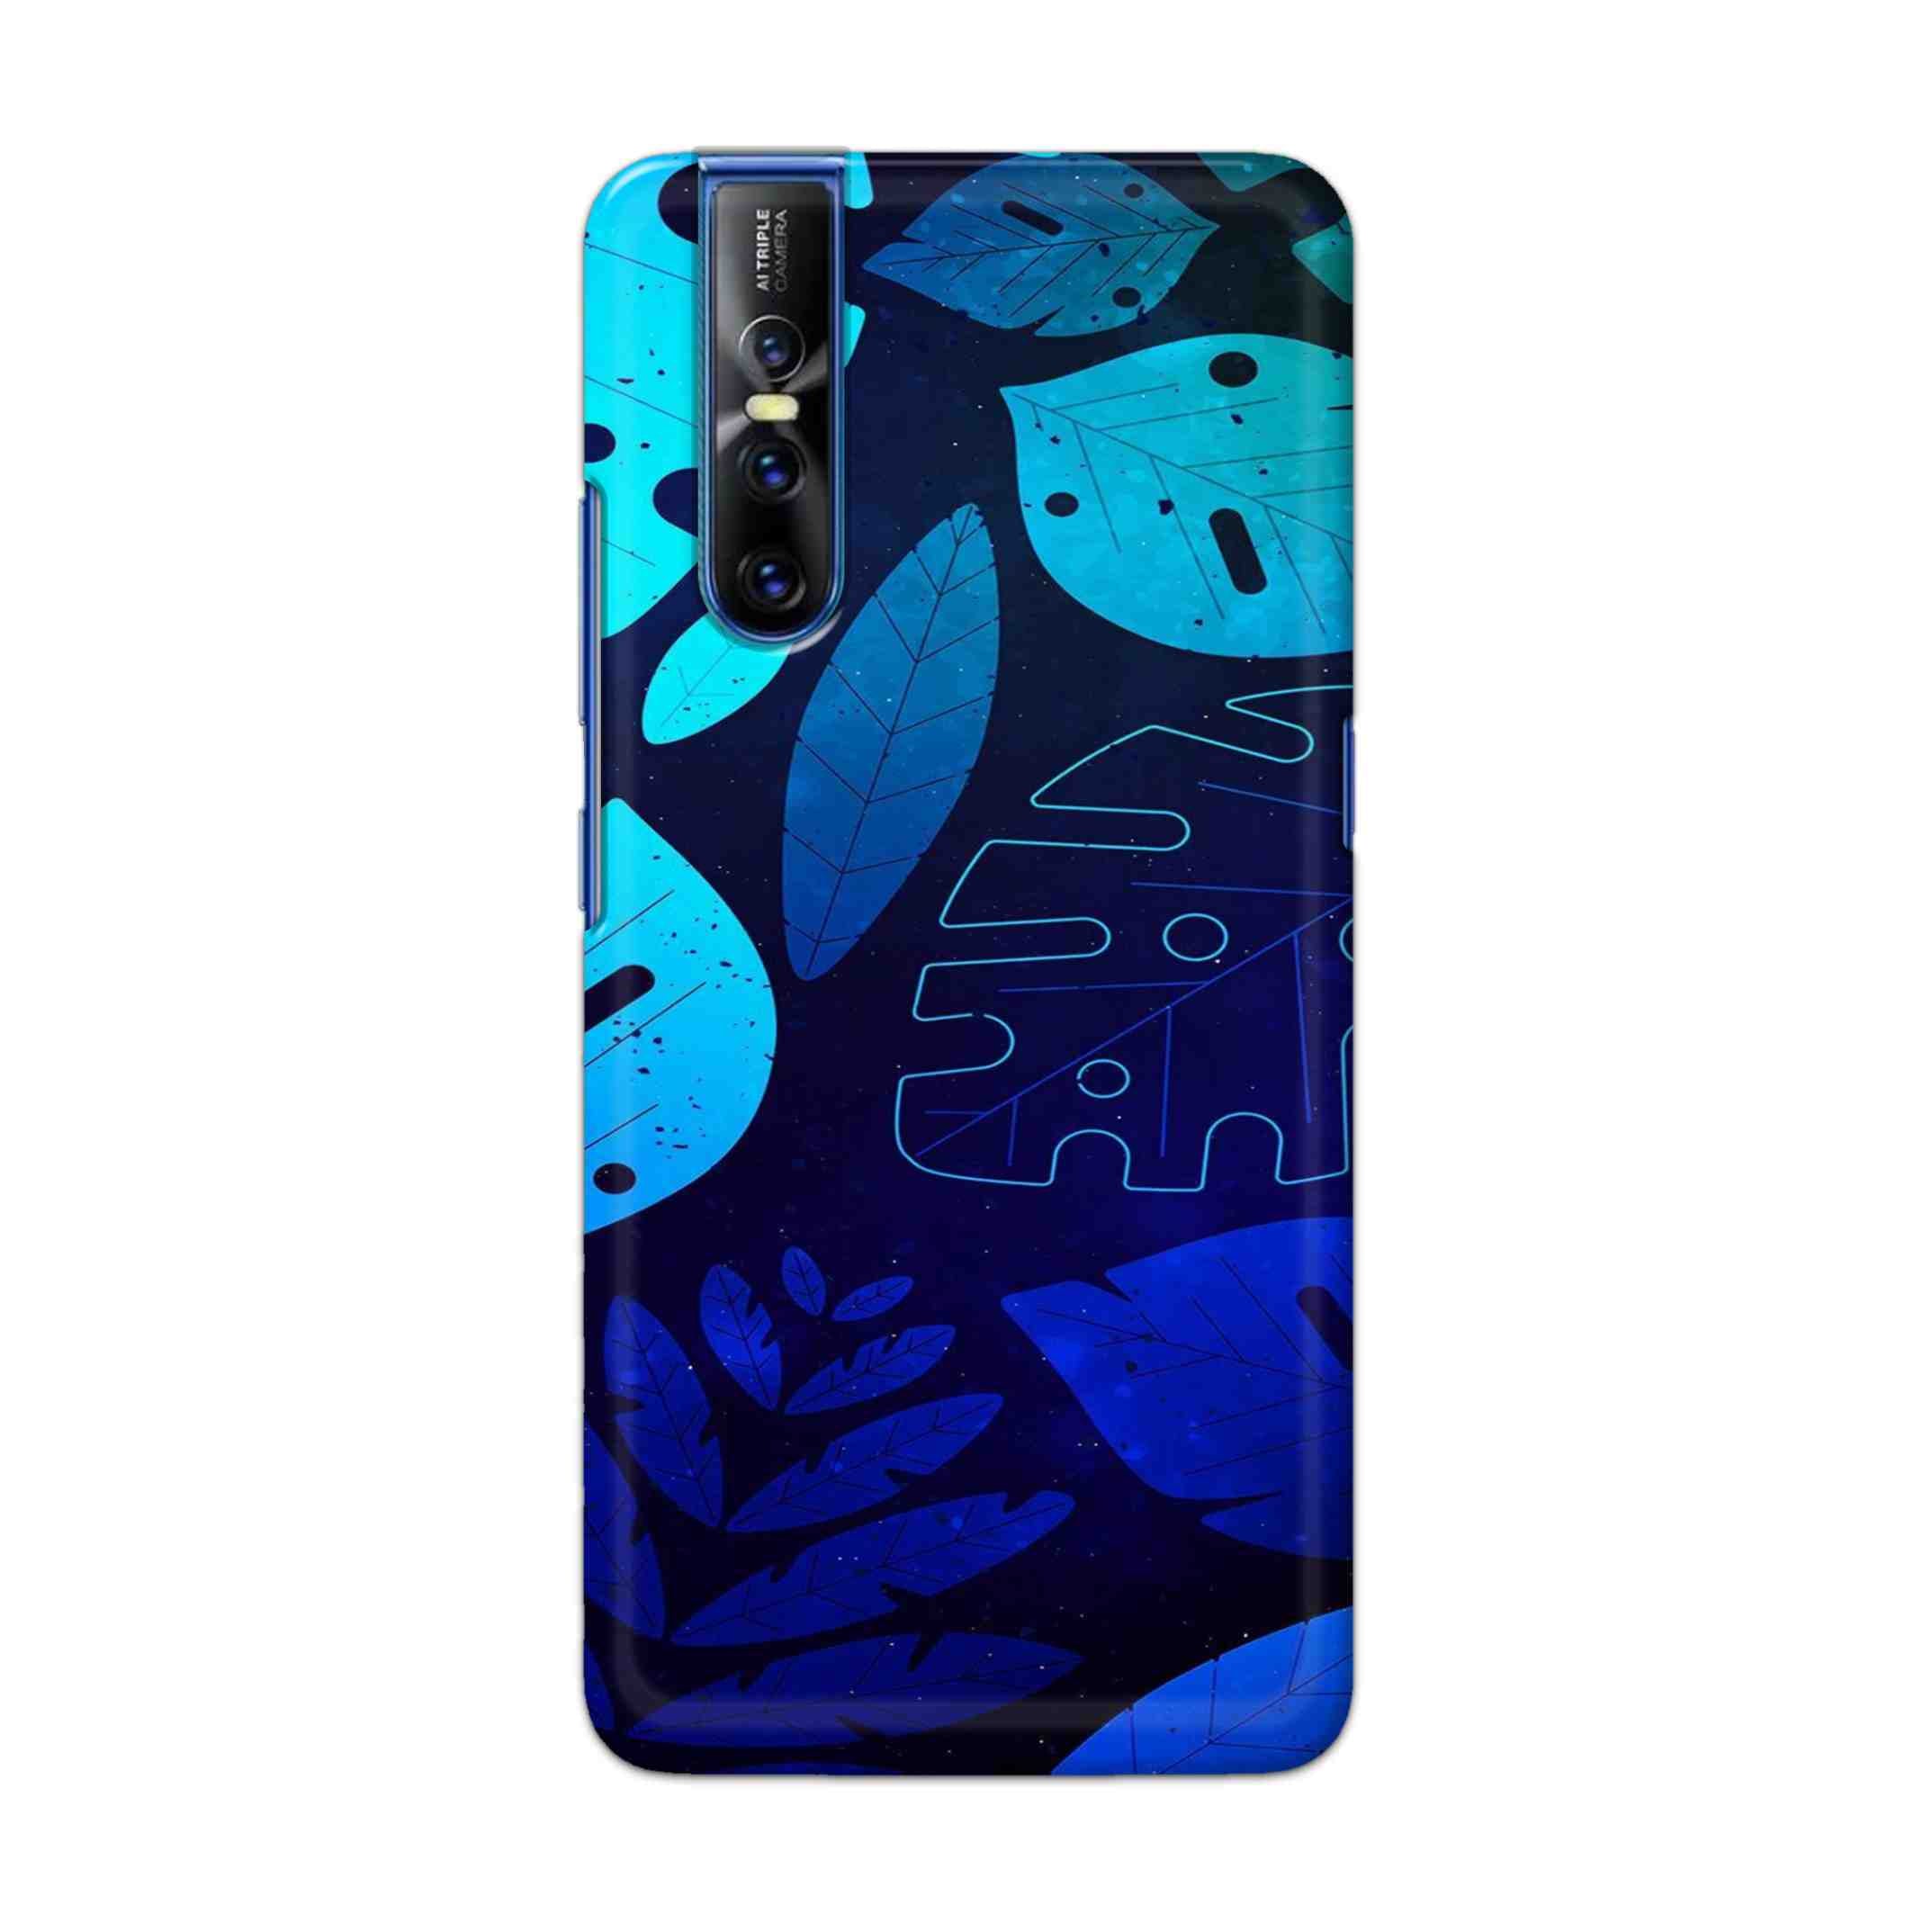 Buy Neon Leaf Hard Back Mobile Phone Case Cover For Vivo V15 Pro Online